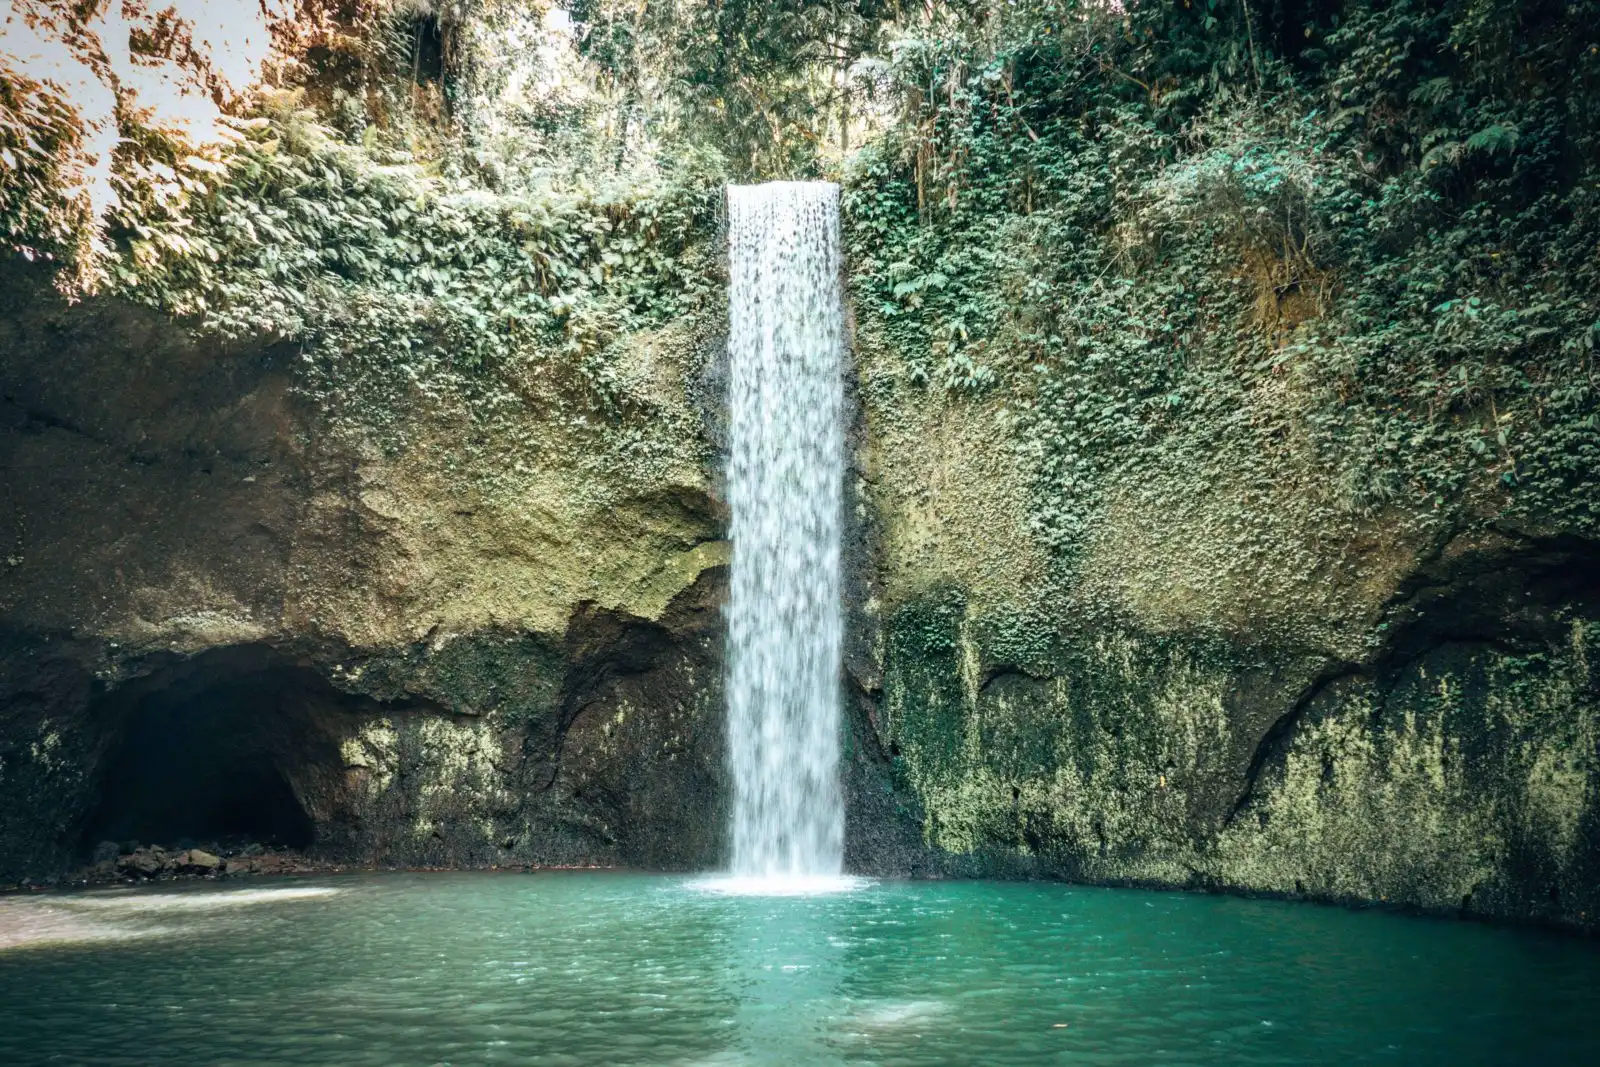 Ubud 3 day itinerary - Tibumana Waterfall